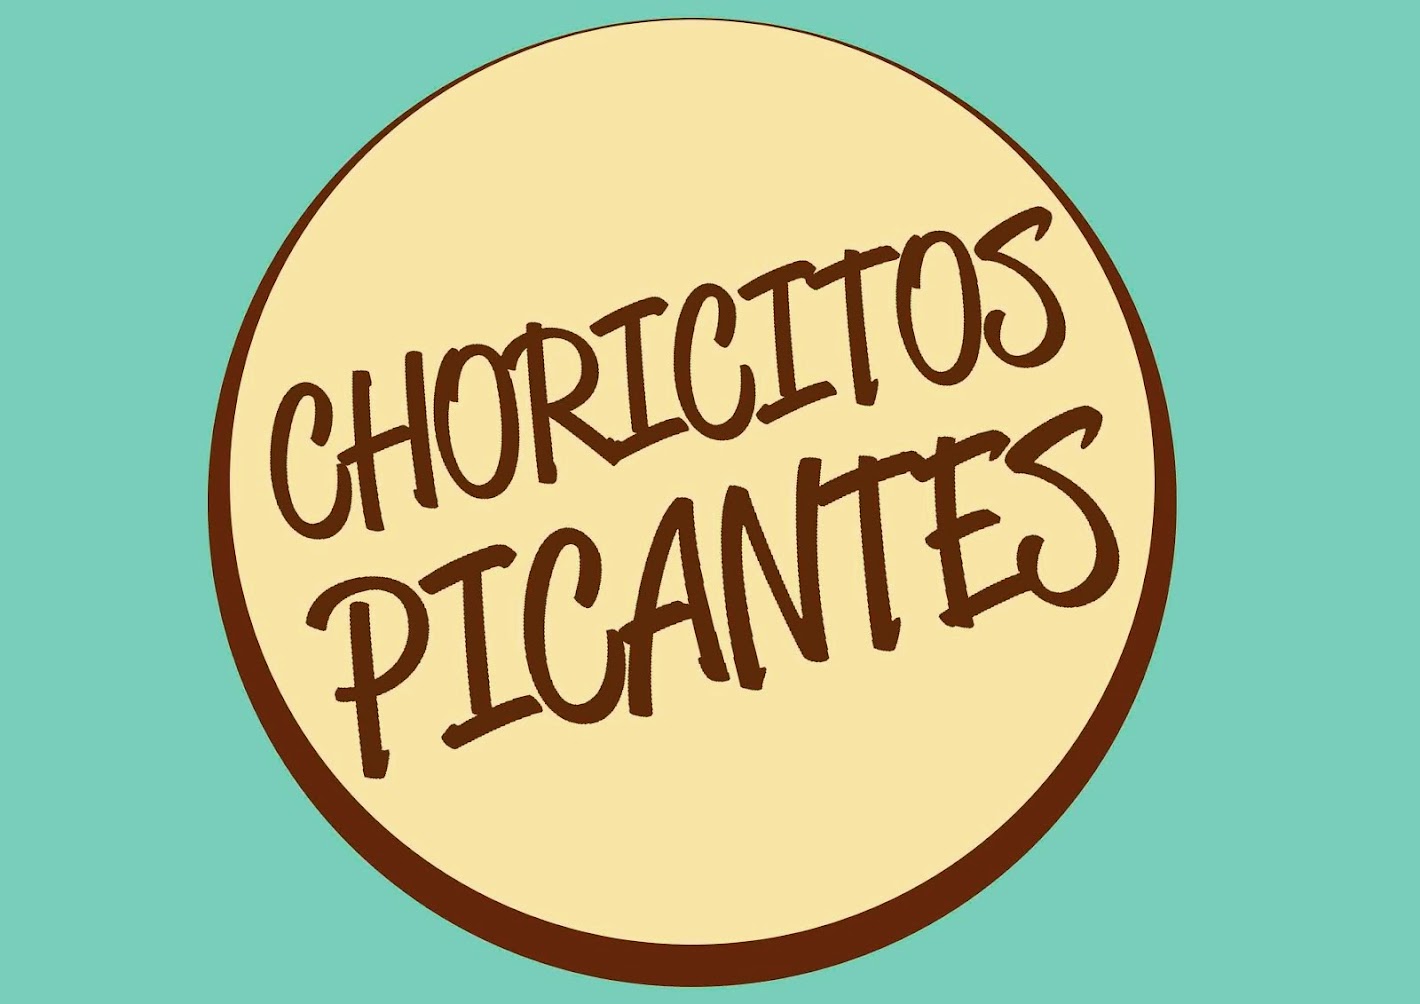 Choricitos Picantes